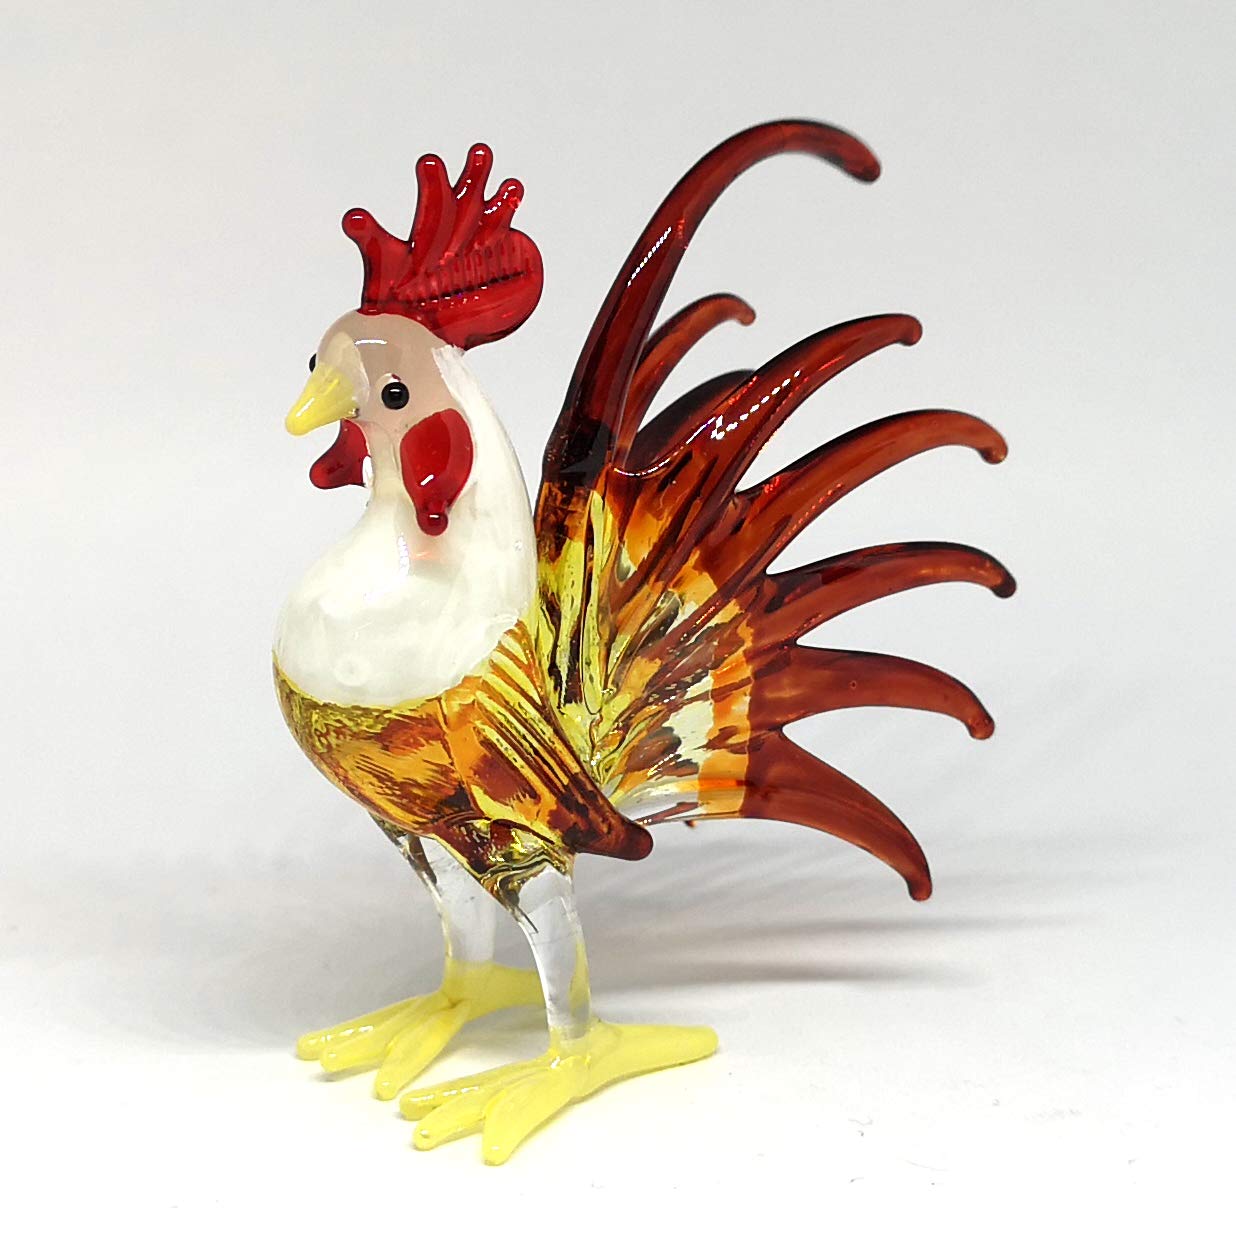 ZOOCRAFT Glass Rooster Chicken Figurine Brown Country Kitchen Decor Miniature Hand Blown Art